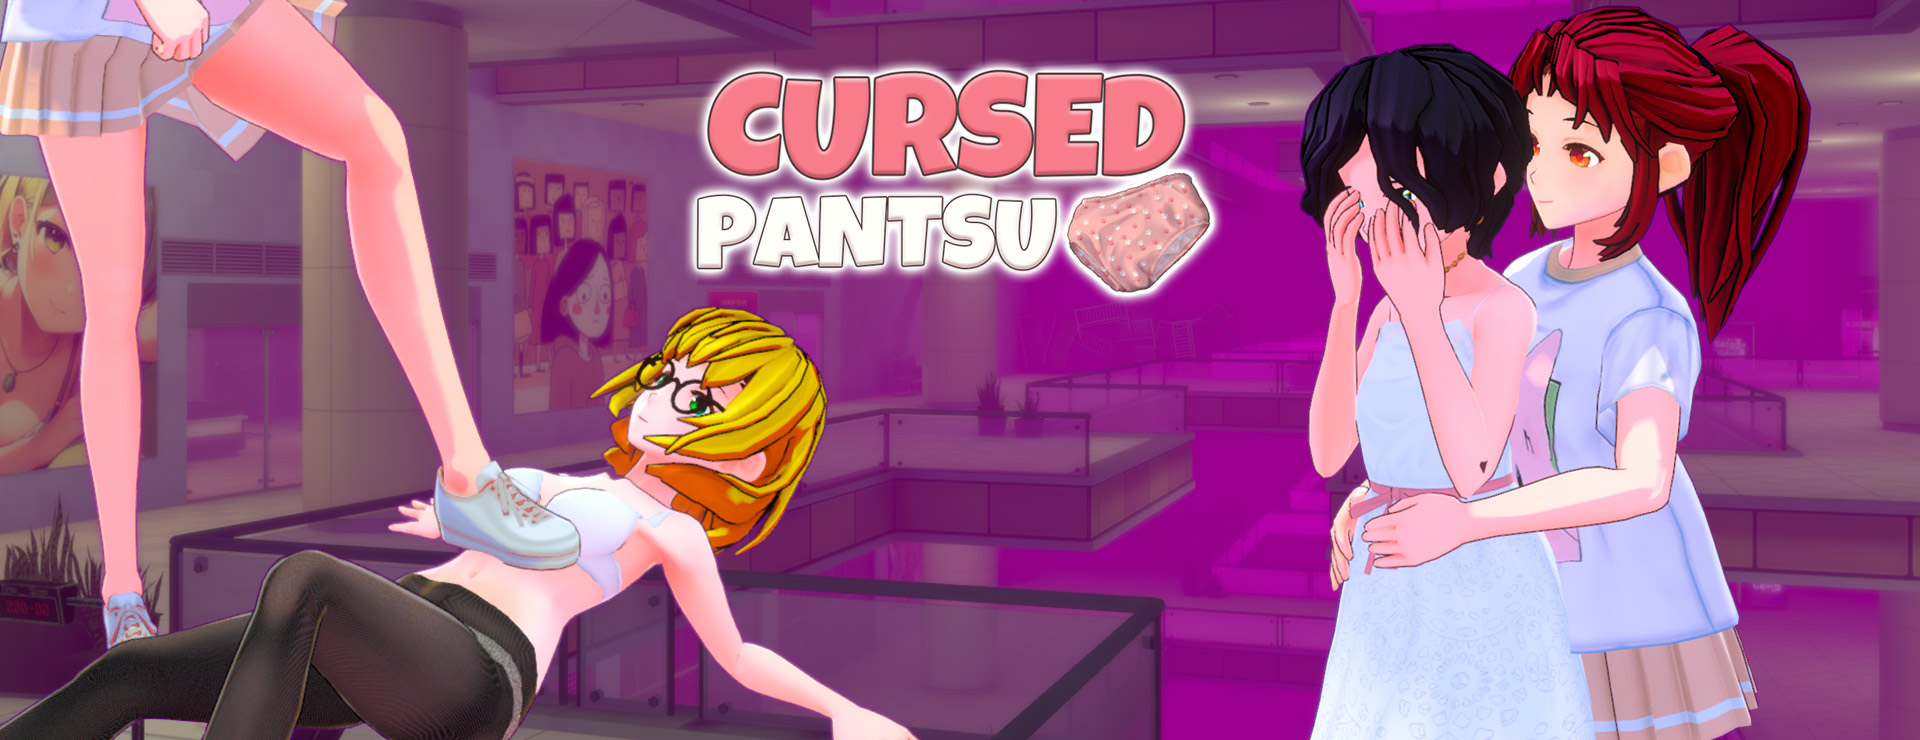 Cursed Pantsu - Action Aventure Jeu